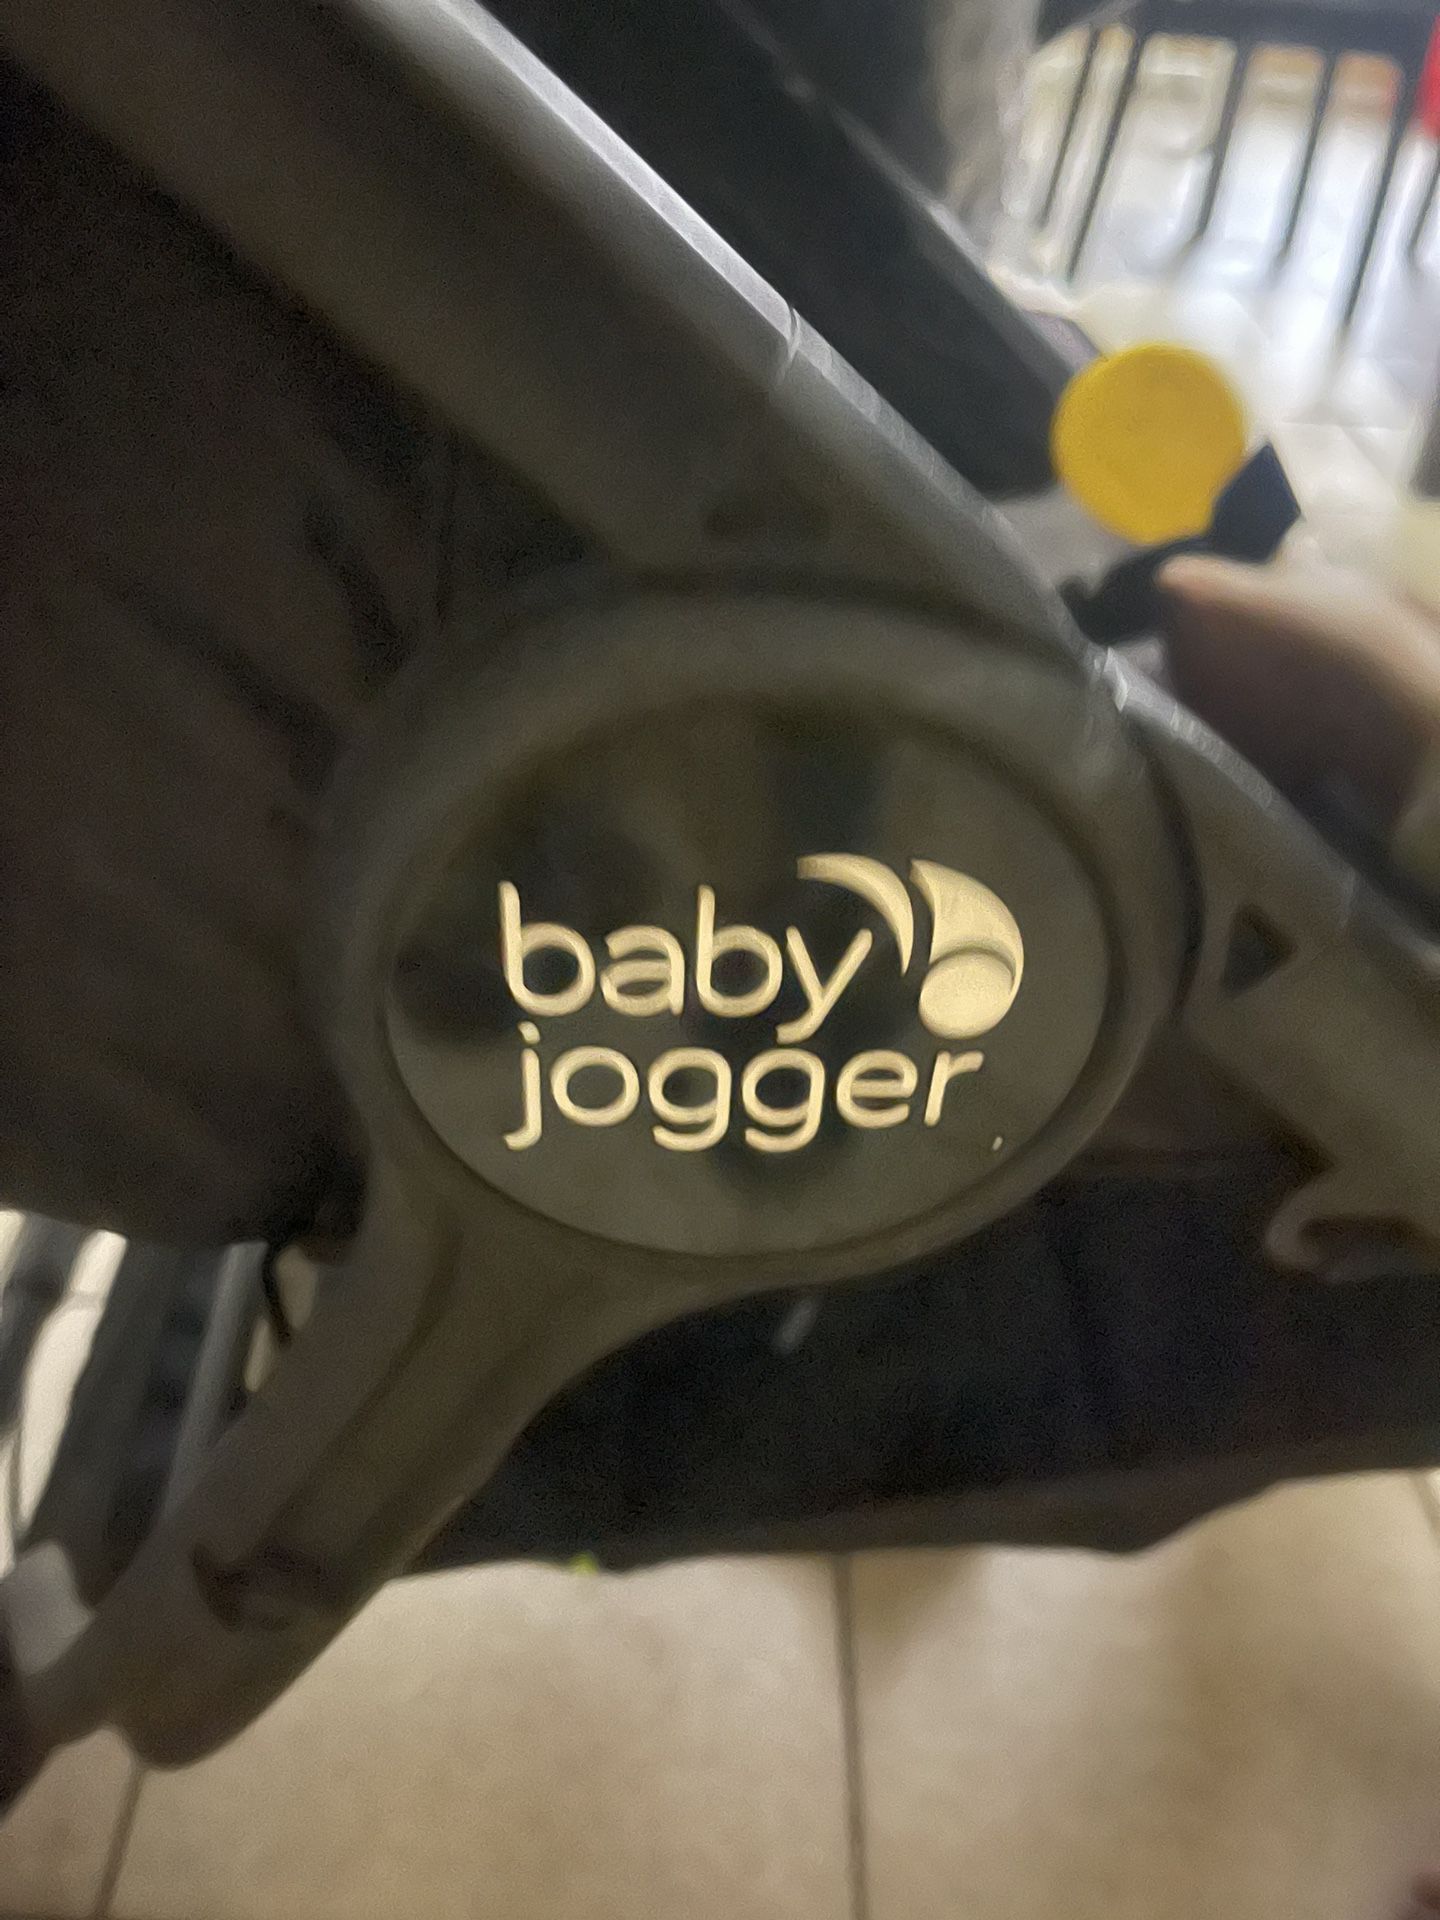 Jogger Stroller